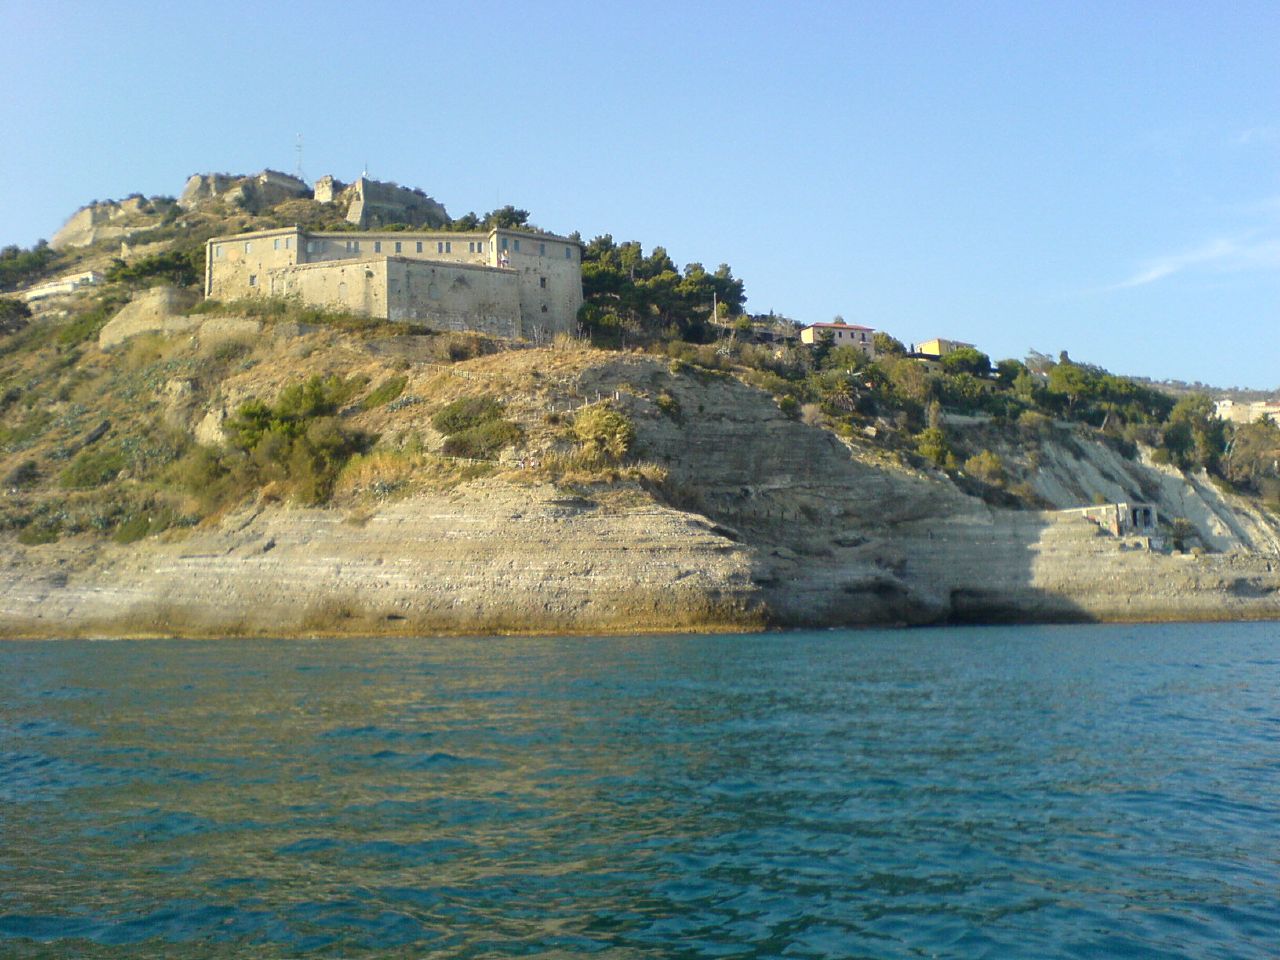 Festungsanlage am Meer nahe der Stadt Ventimiglia